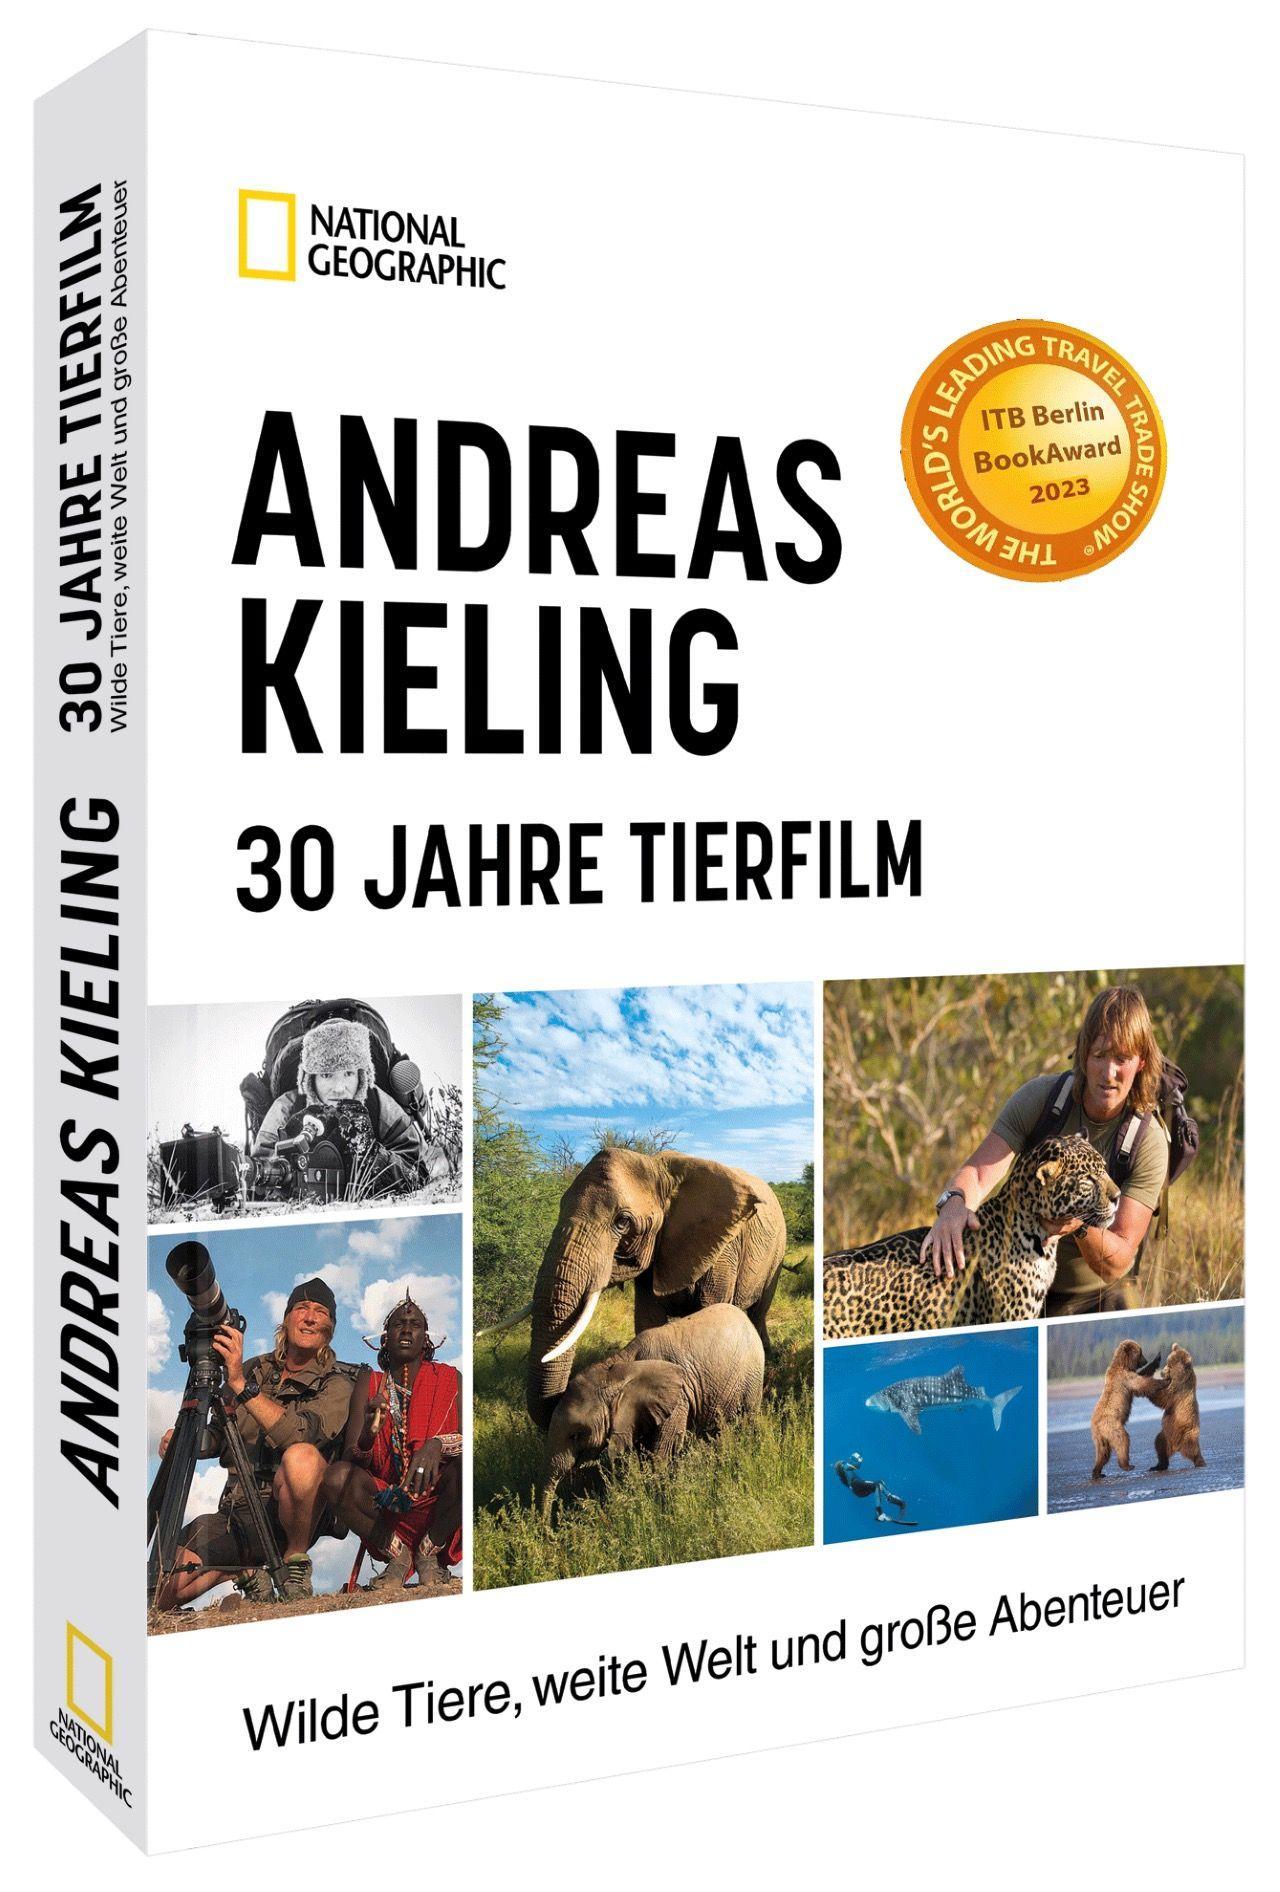 Andreas Kieling - 30 Jahre Tierfilm Wilde Tiere, weite Welt und große Abenteuer